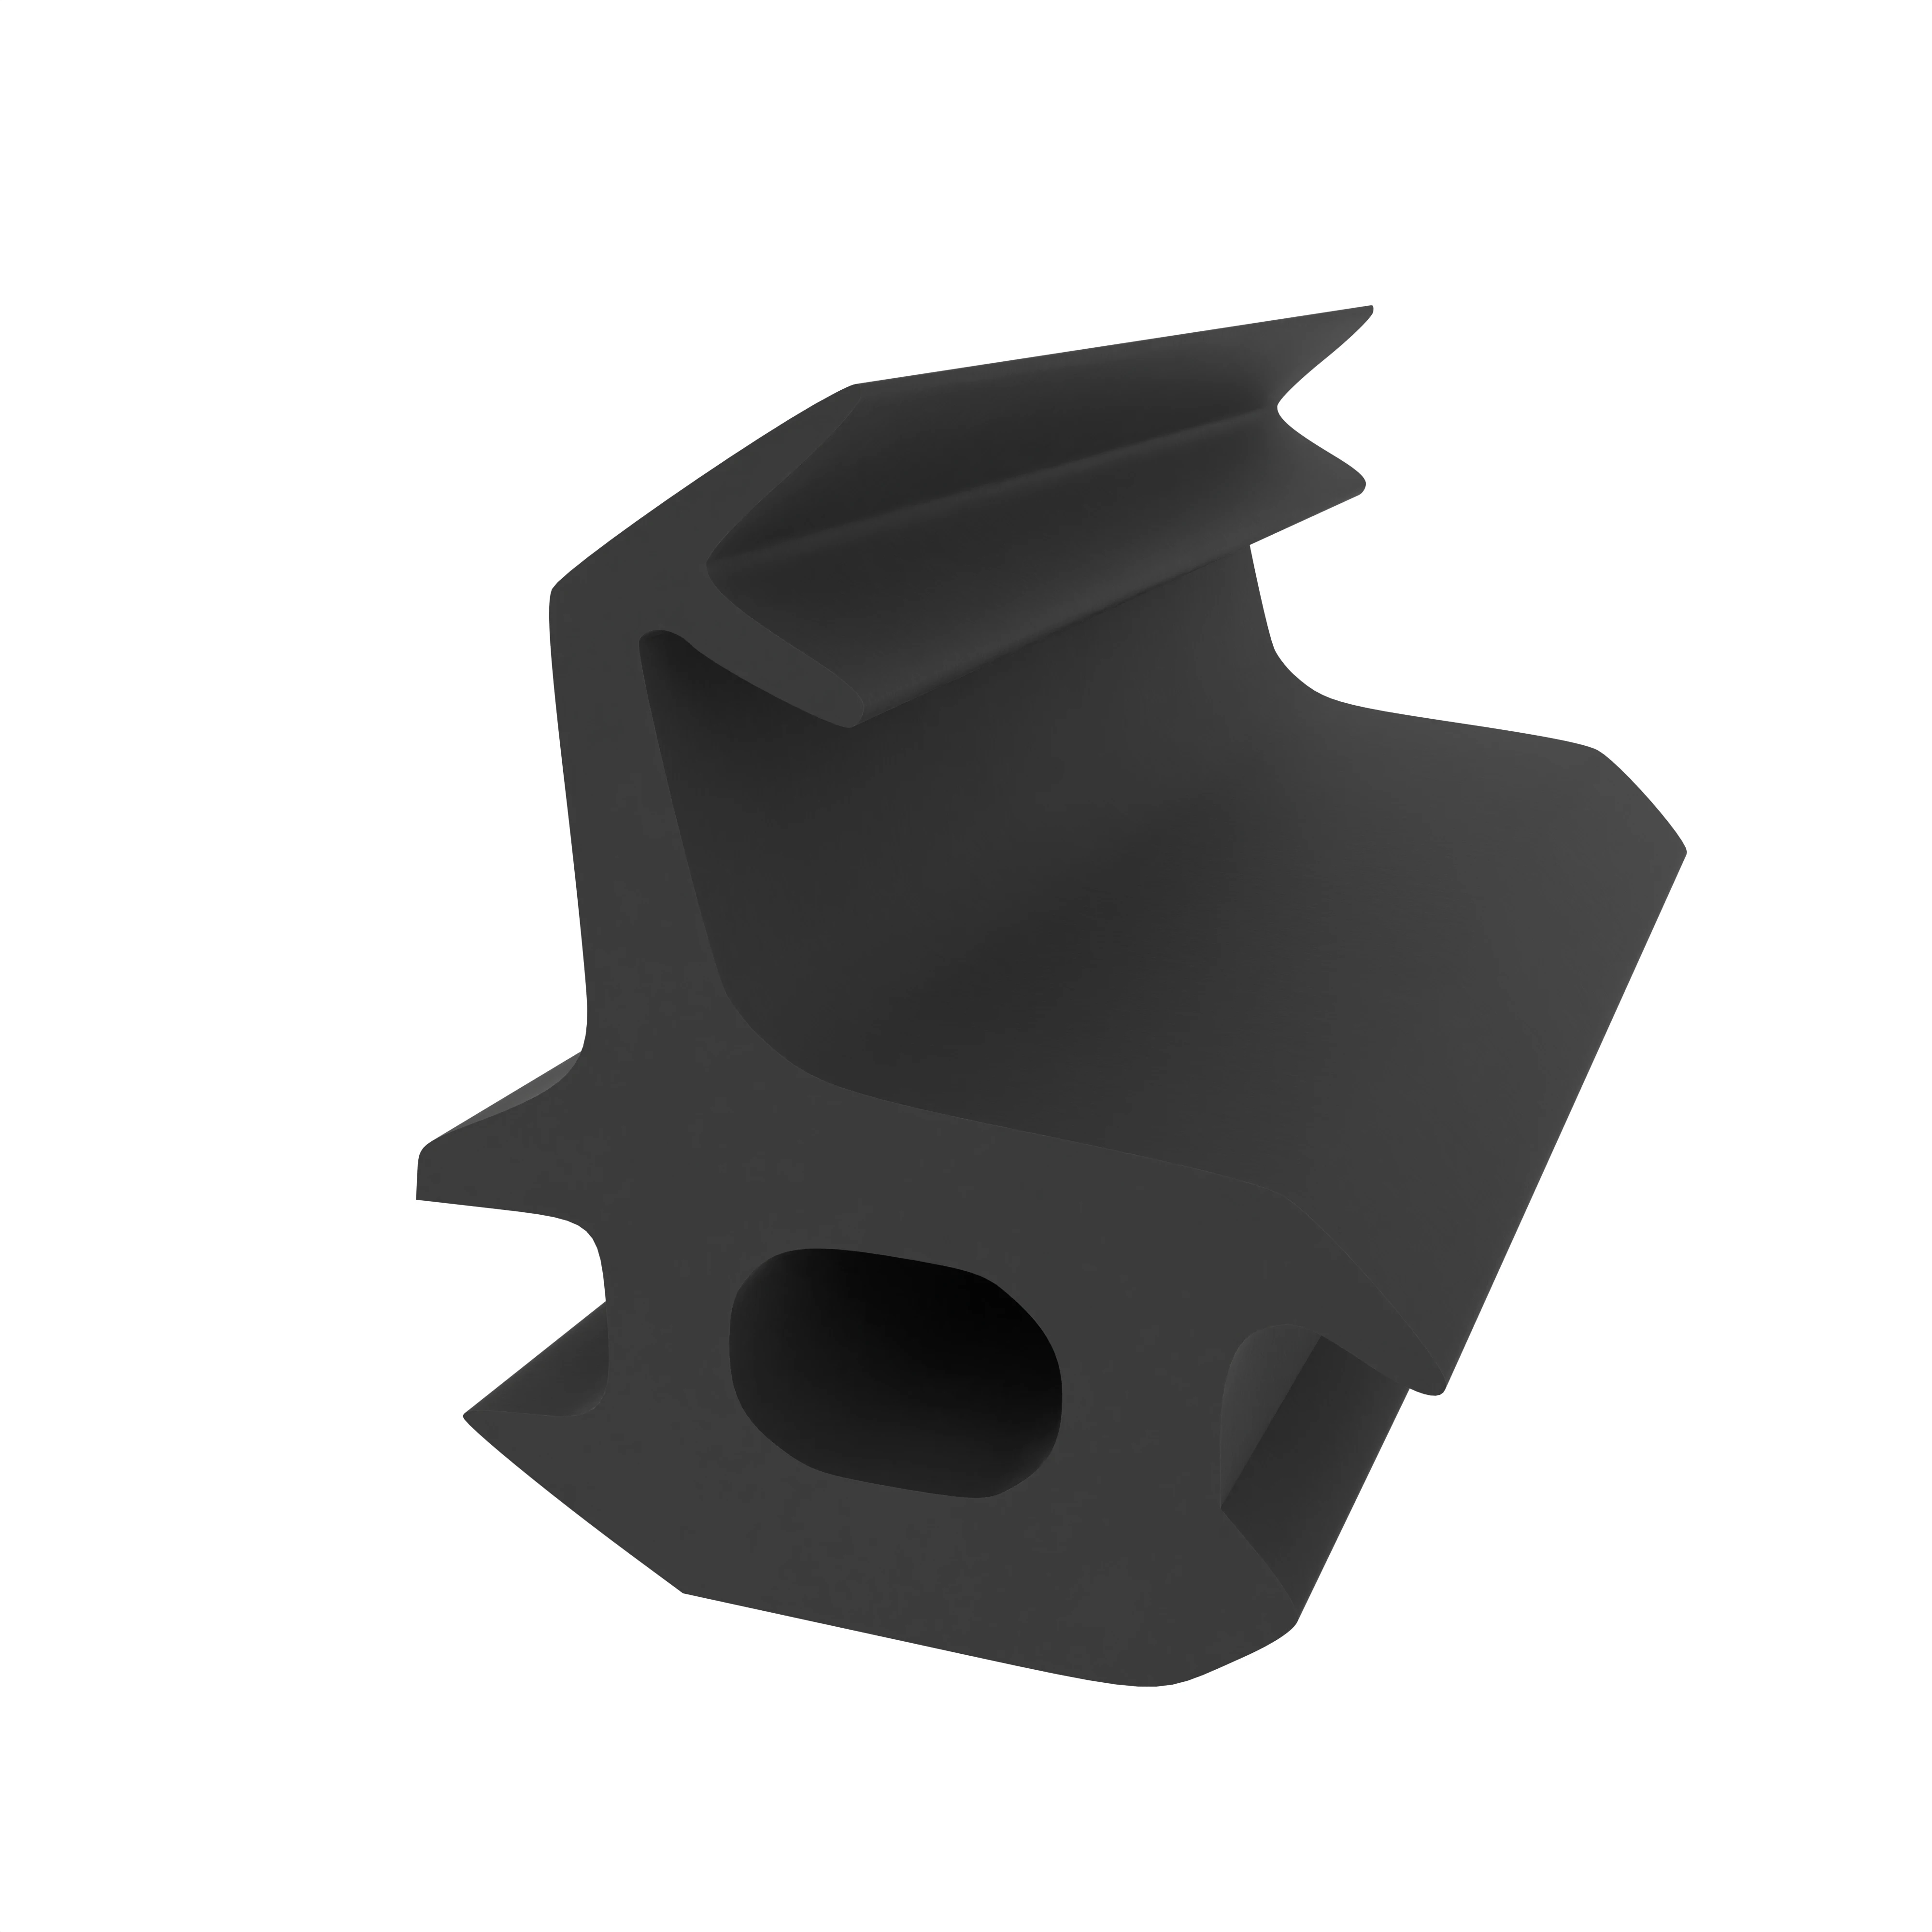 Mitteldichtung für Metall- und Alufenster | 15 mm Höhe | Farbe: schwarz